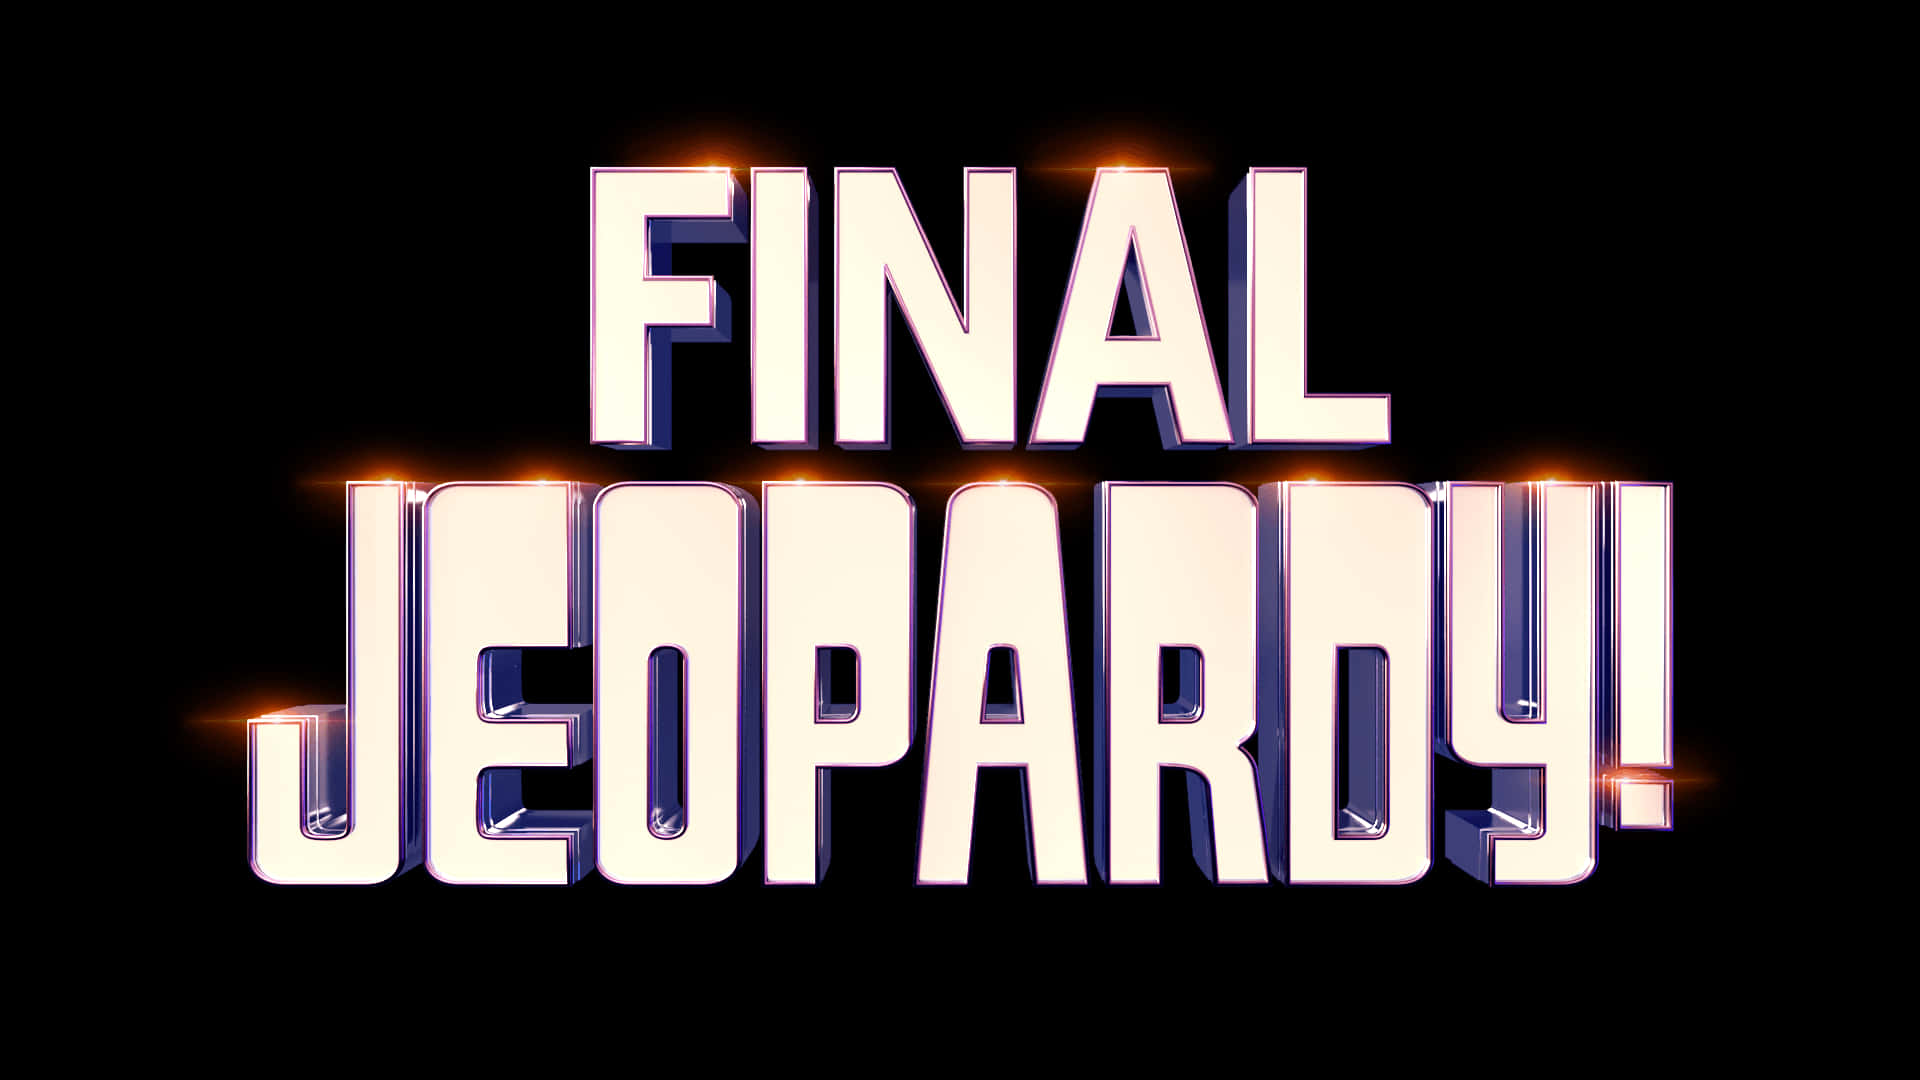 Final Jeopardy Logo On A Black Background